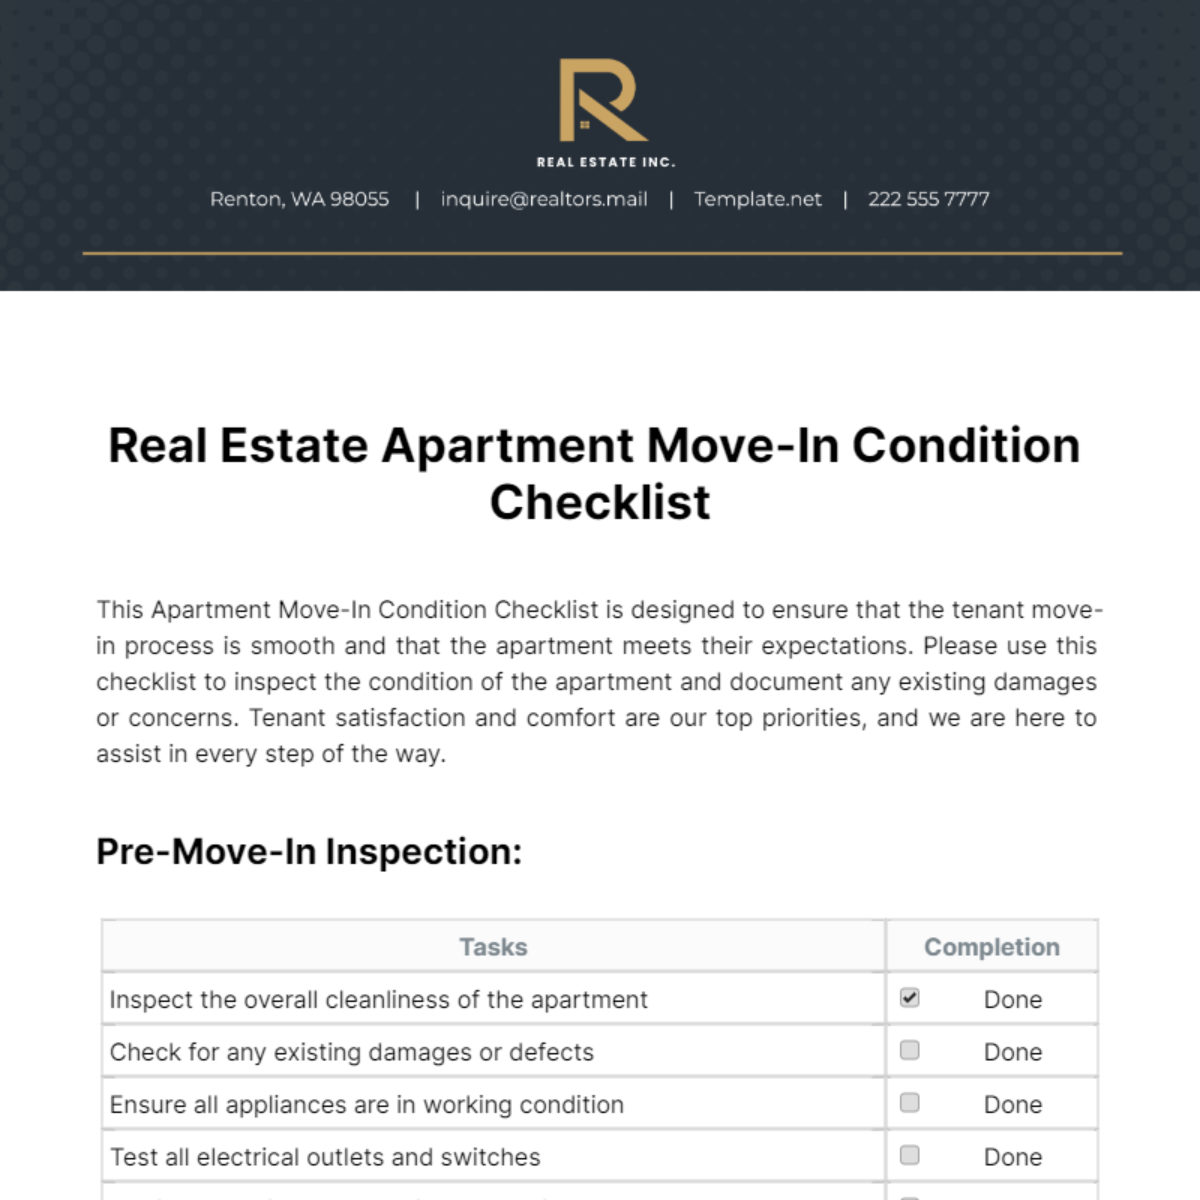 Real Estate Apartment Move-In Condition Checklist Template